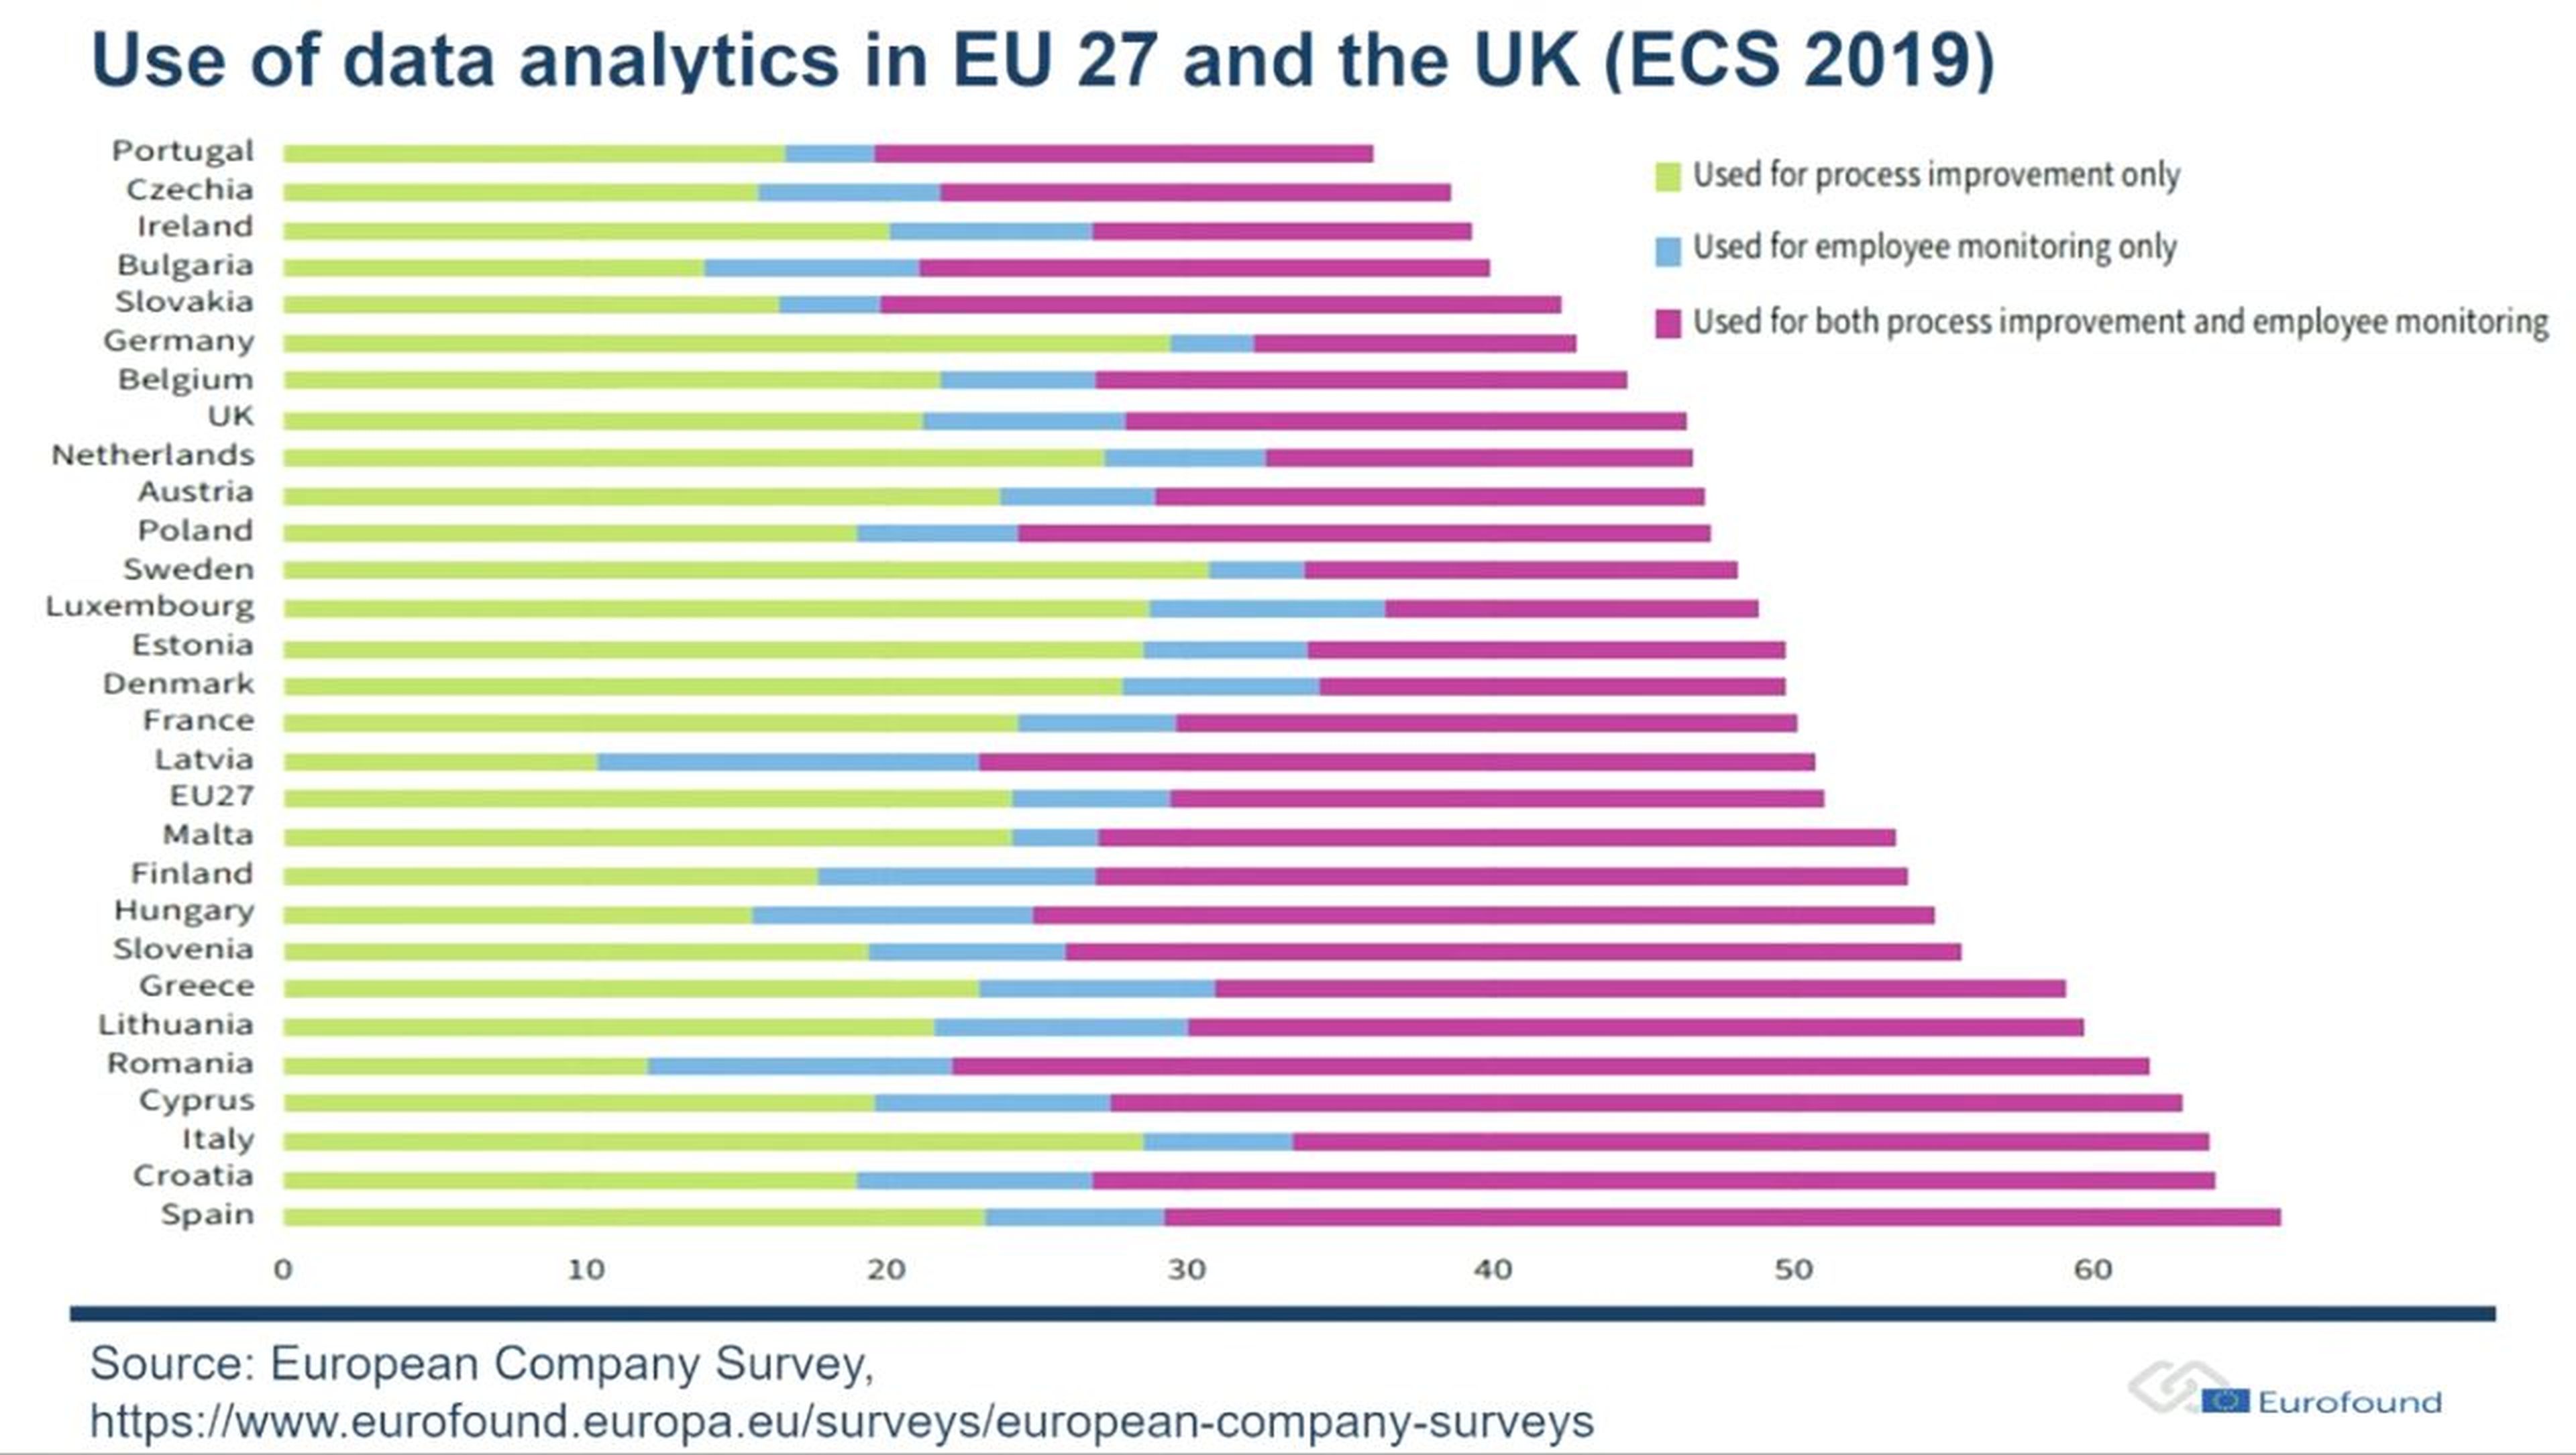 Uso de analítica de datos en empresas según la ECS 2019.